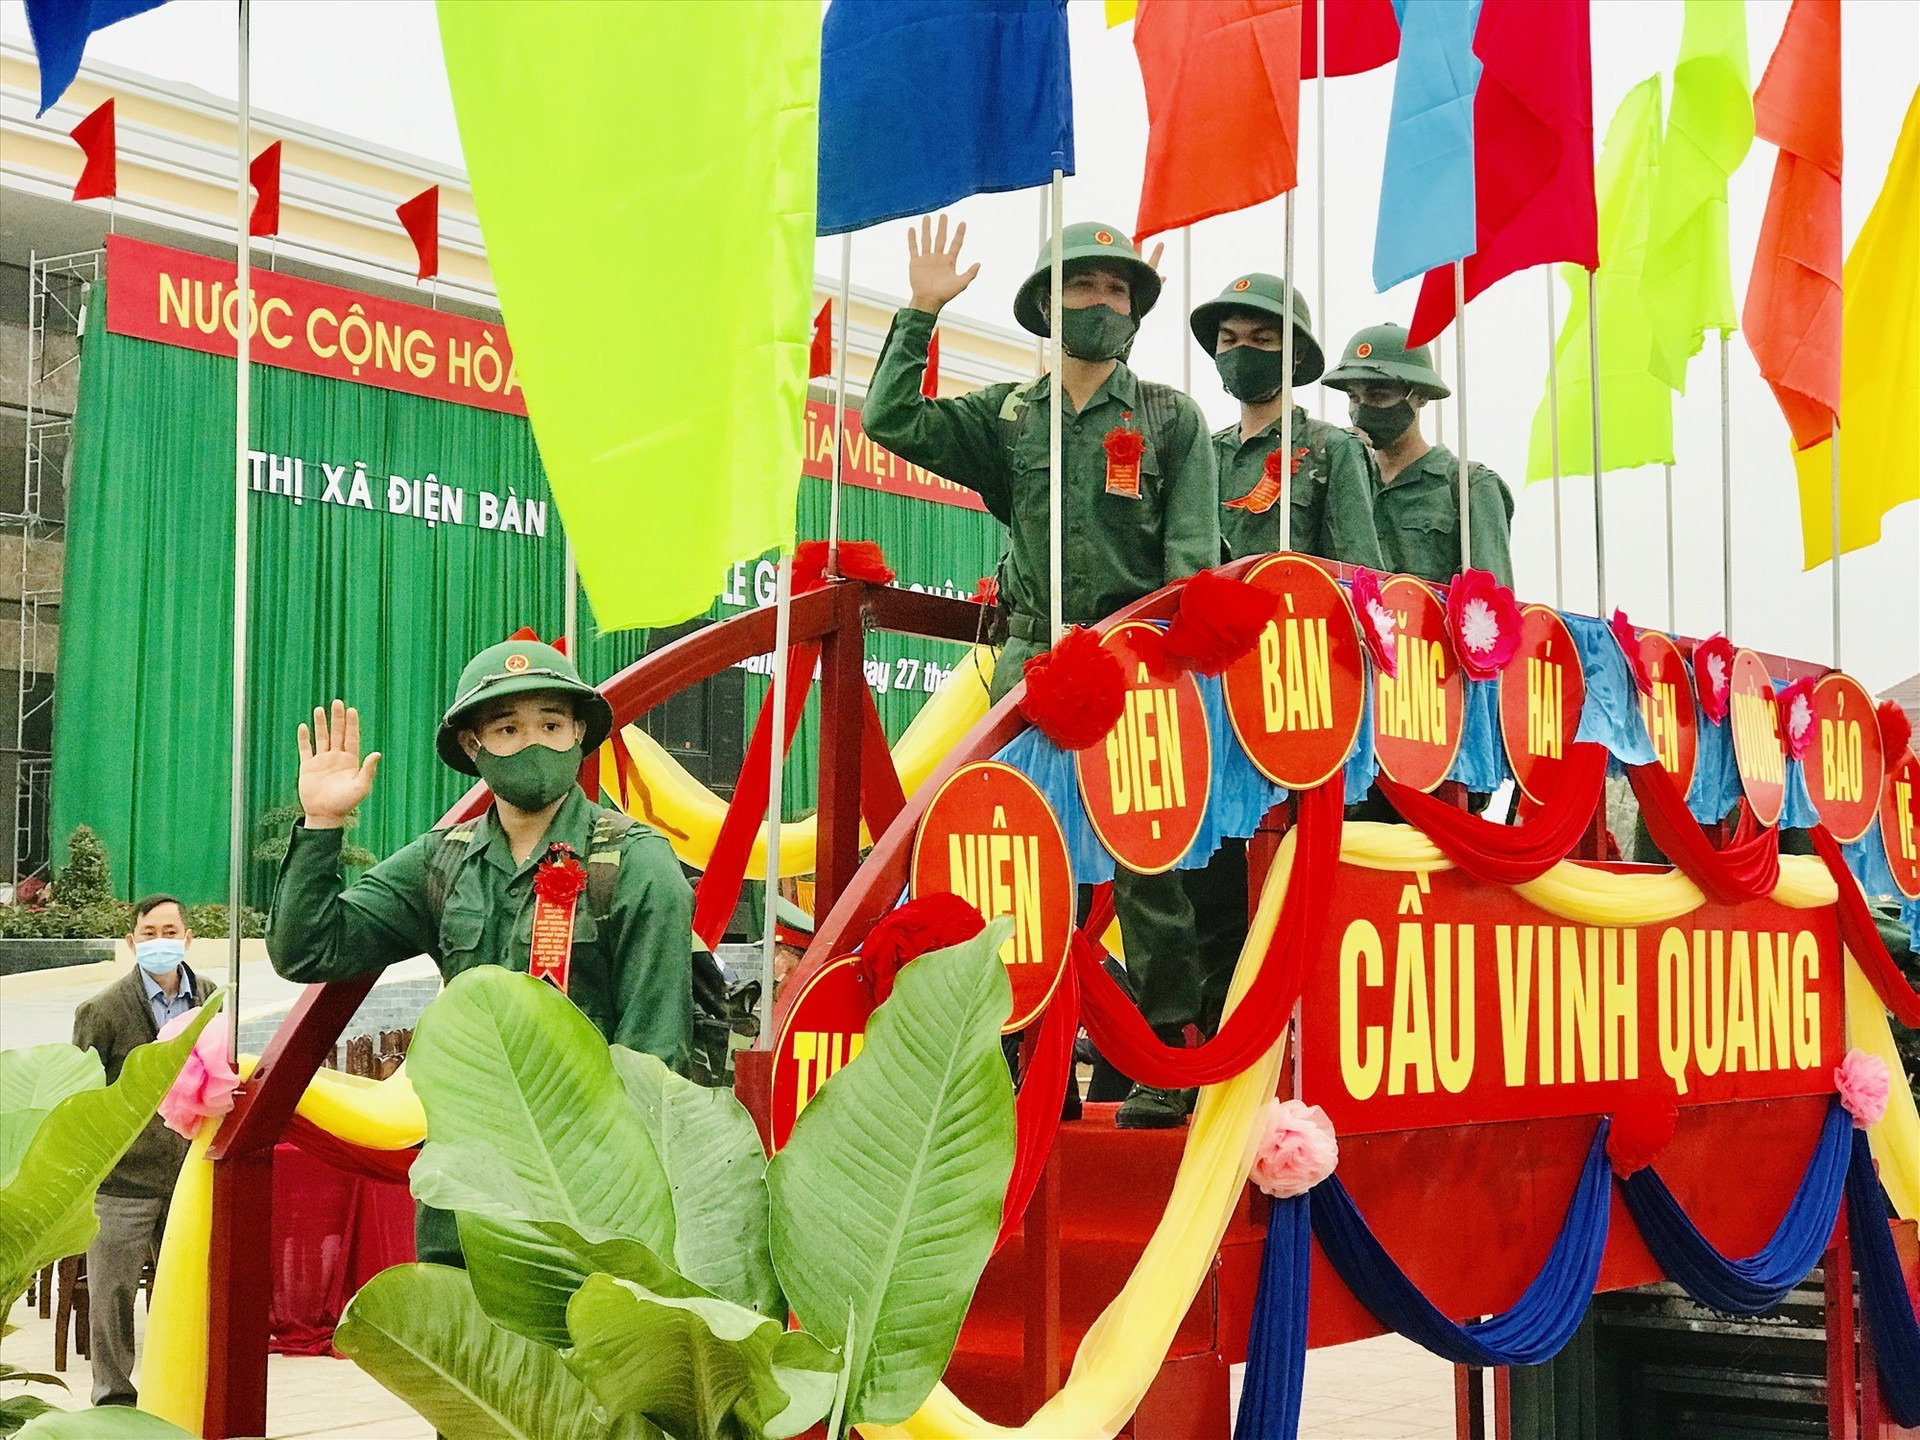 Tân binh thị xã Điện Bàn bước qua cầu vinh quang lên đường nhập ngũ. Ảnh: QUỐC TUẤN